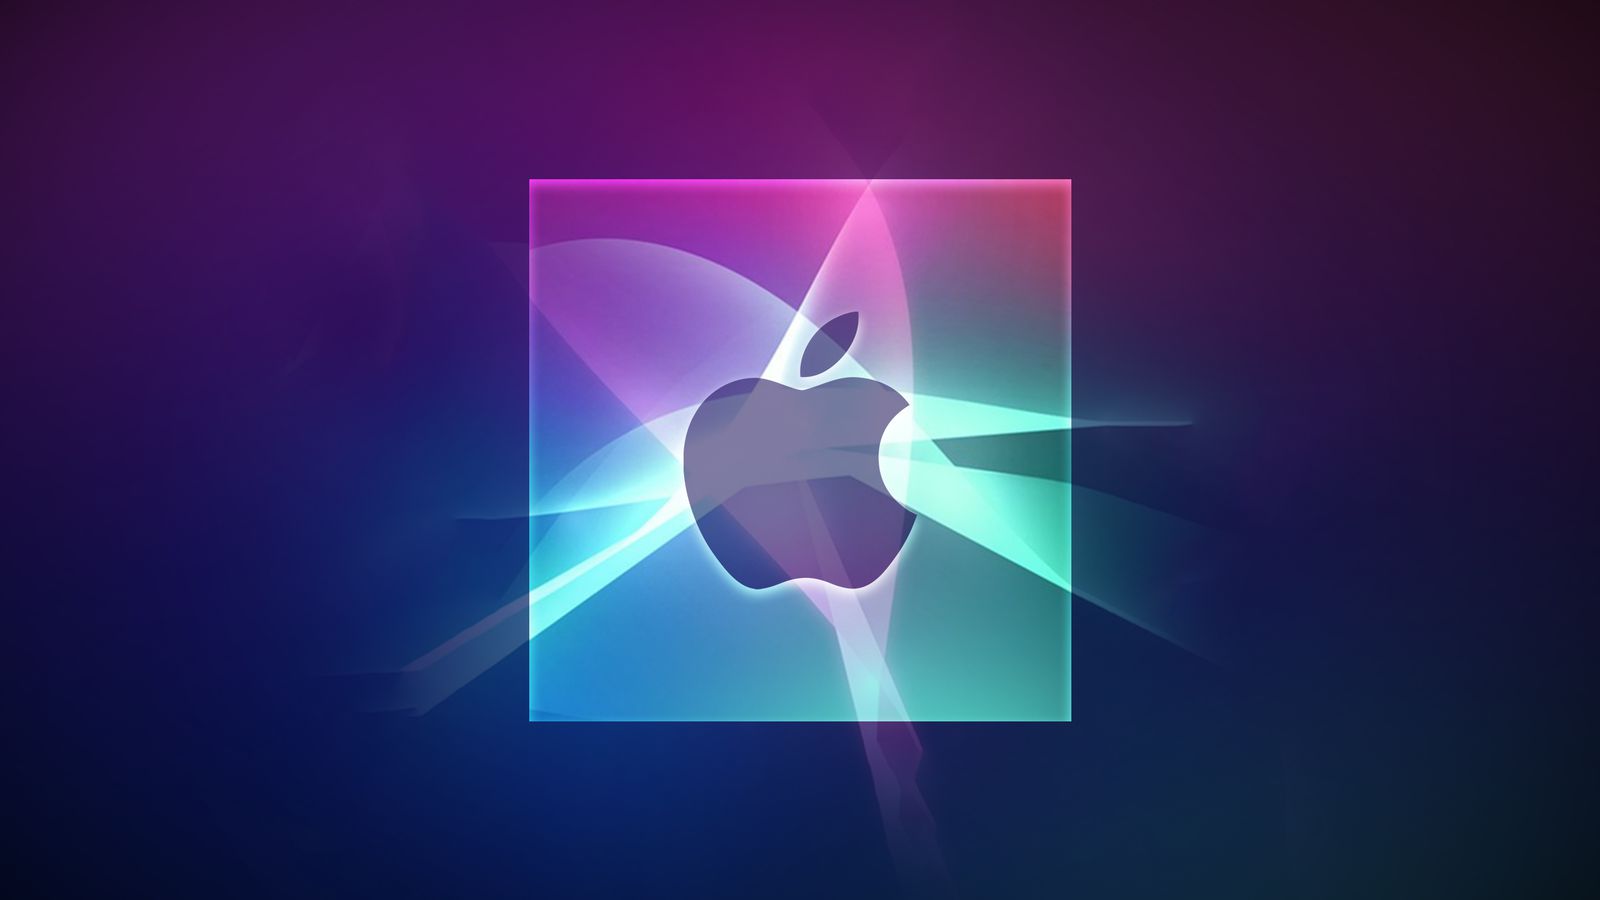 Do iPhoneIslam.com, logotipo da Apple em um fundo gradiente em tons de roxo e azul, aprimorado com efeitos de luz e sombra, destacado no Fringe News desta semana